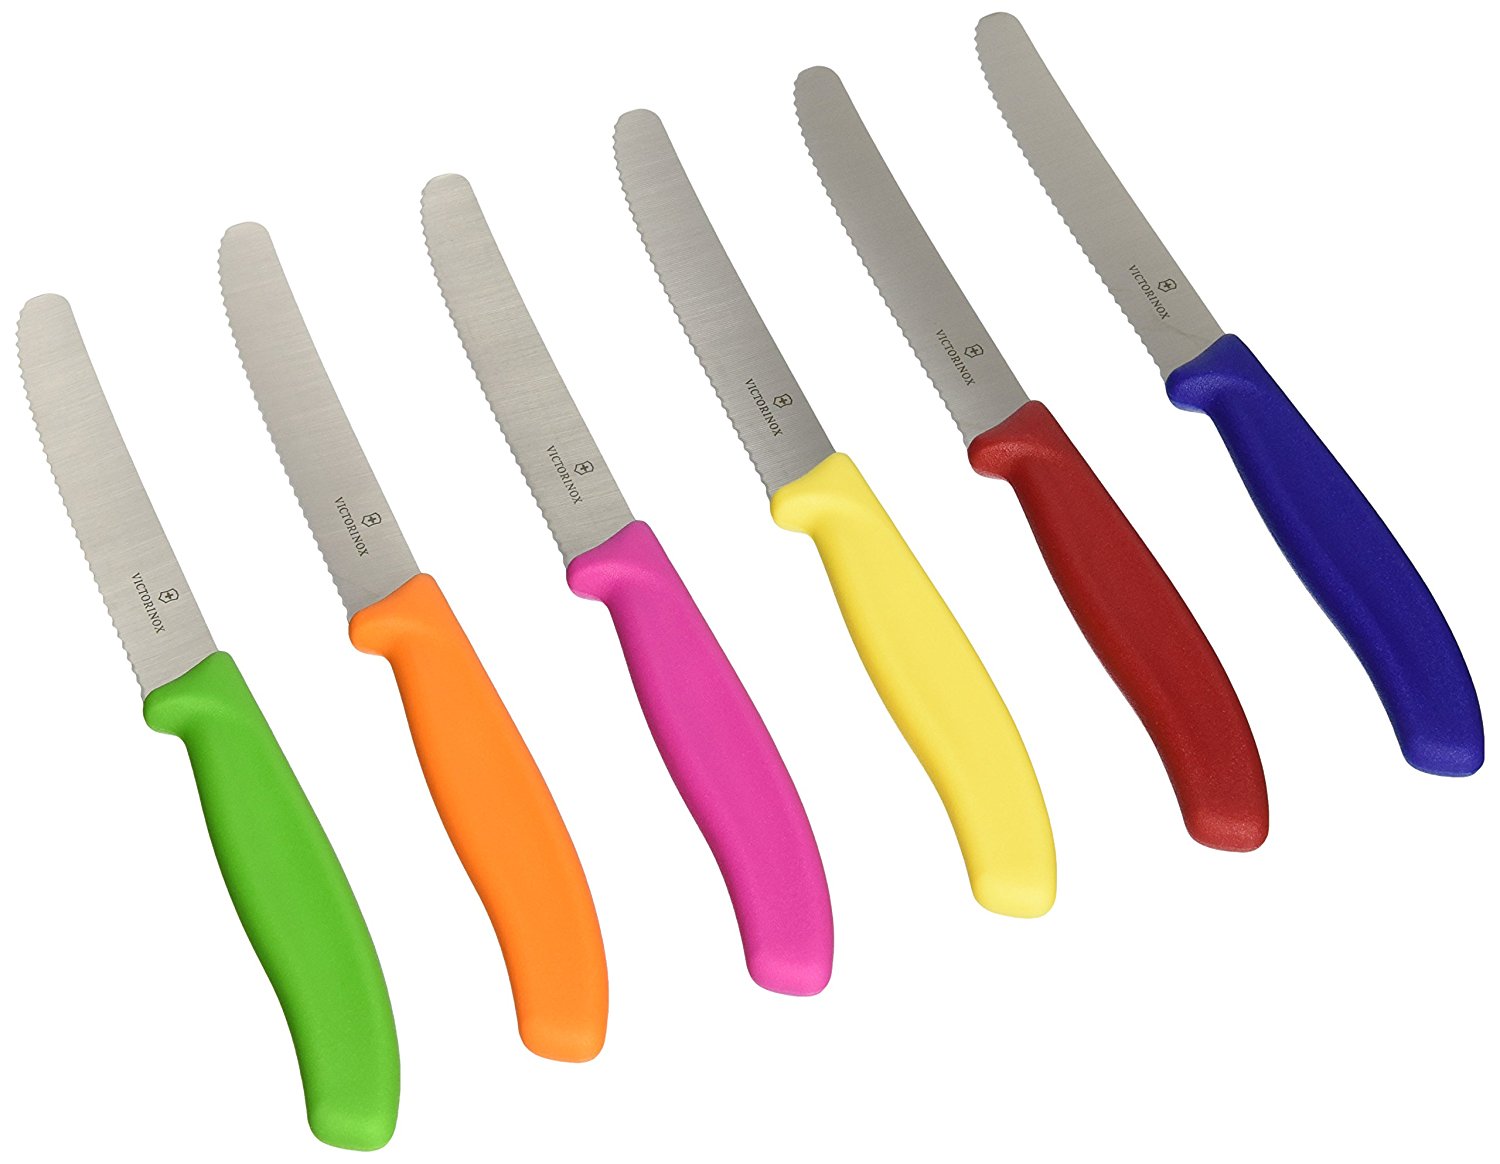 סכין ירקות מעוגל משונן - Victorinox